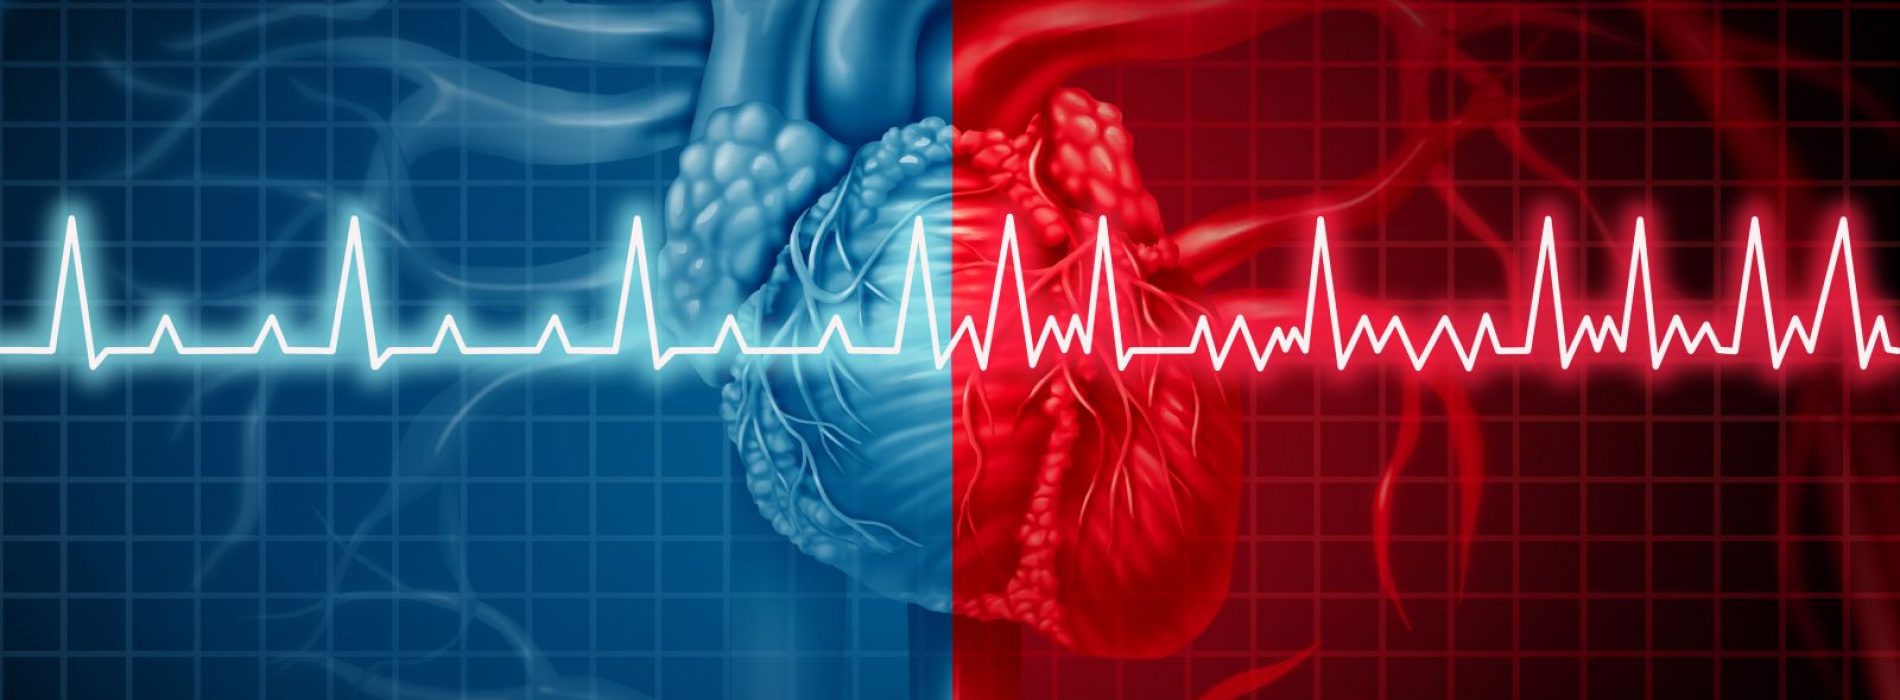 De meeste cardiologen schrokken toen ze de ware oorzaak van hartaanvallen ontdekten